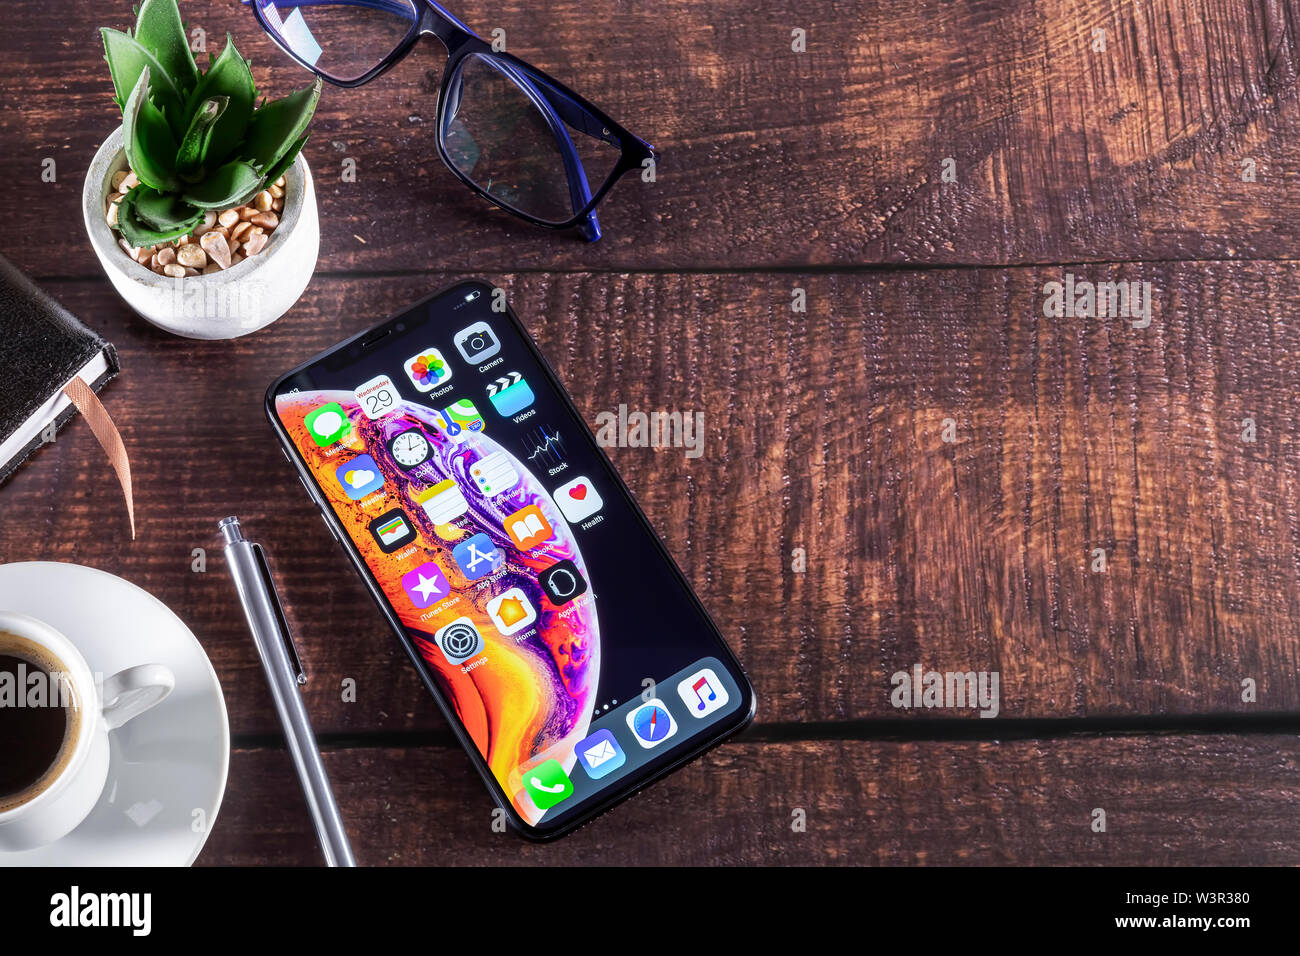 Galati, Rumänien - 29. Mai 2019: Apple Computer iPhone XS auf Luxus Möbel aus Holz - Smartphone Telefon mit OLED-Display. Schreibtisch mit Smart p Stockfoto